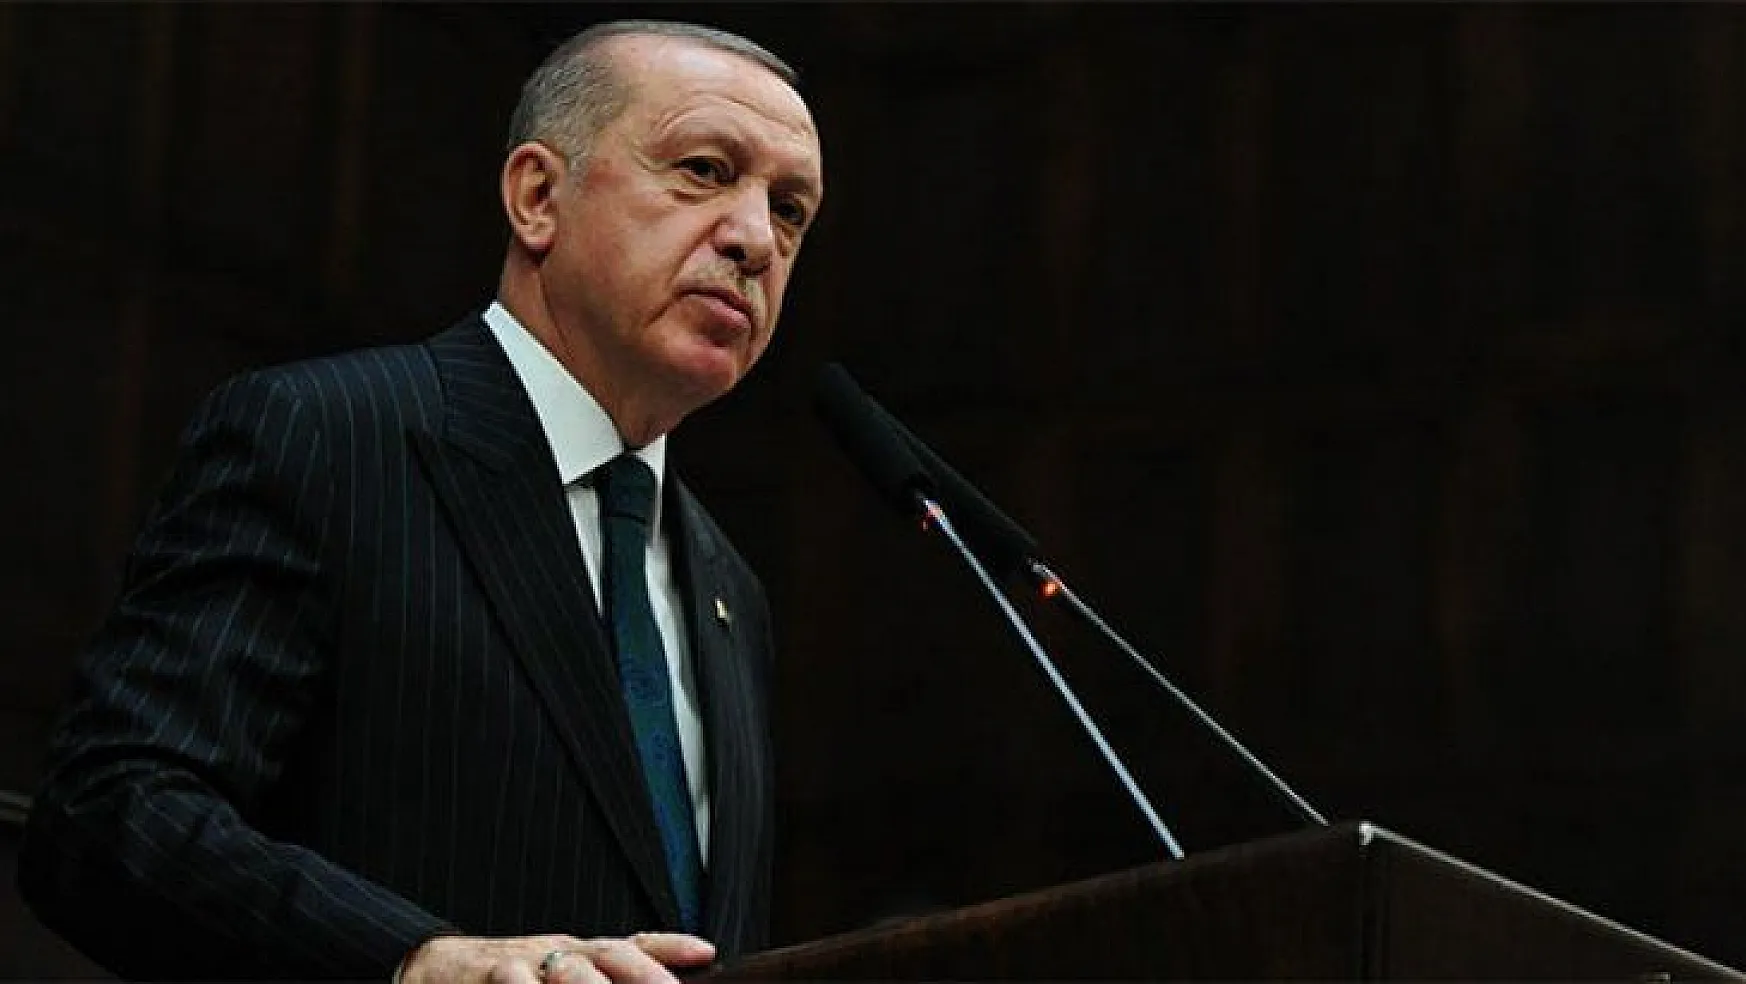 Cumhurbaşkanı Erdoğan'dan koronavirüs tedbirlerine ilişkin açıklama!